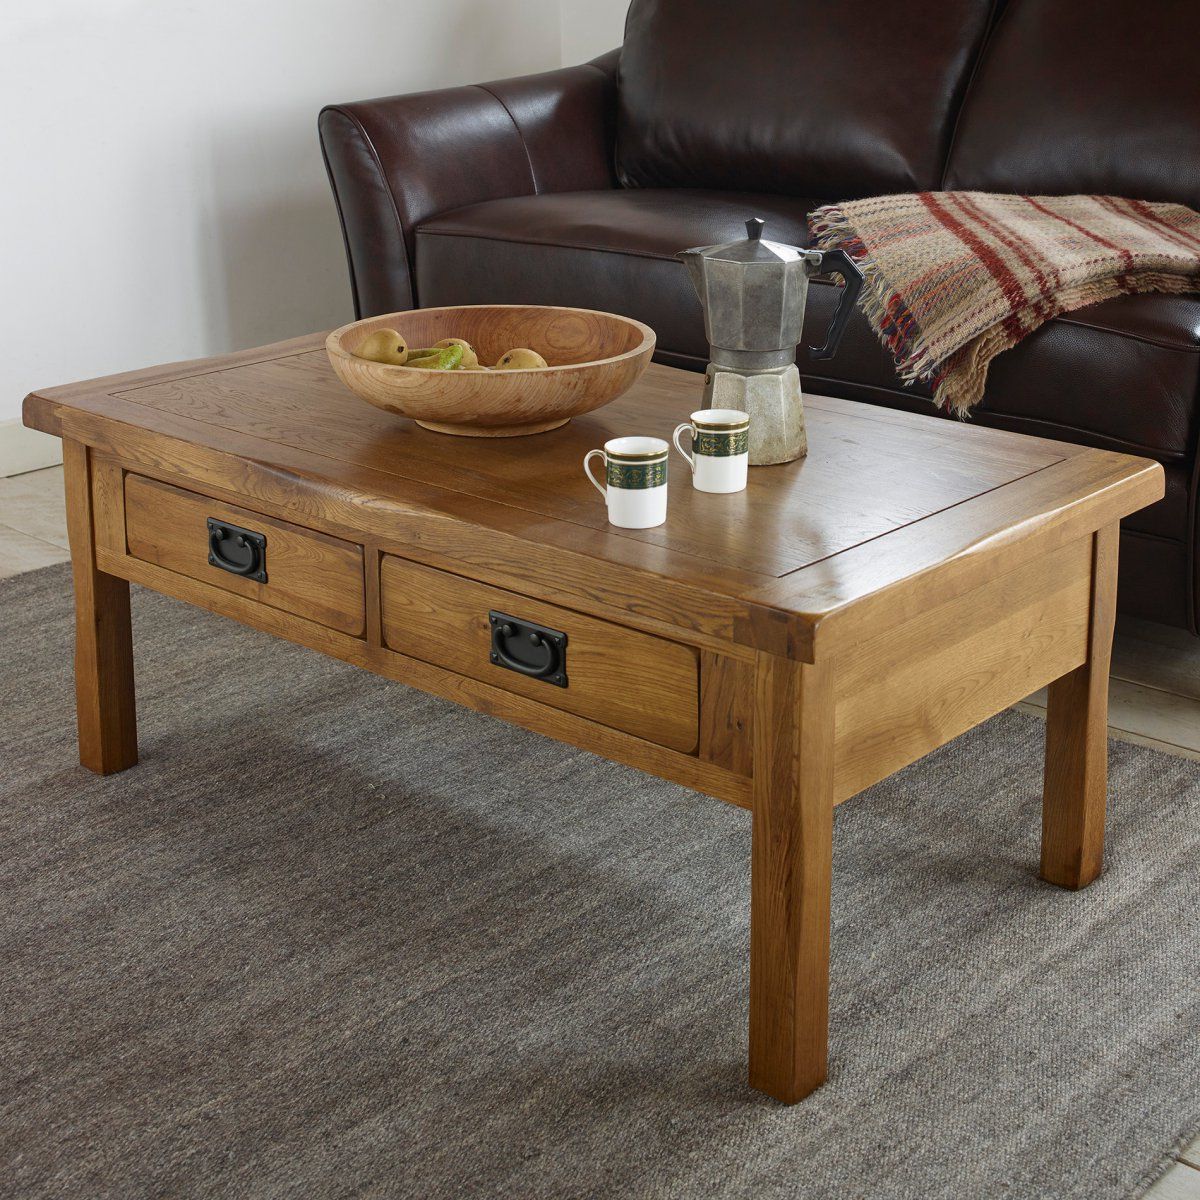 Original Rustic 4 Drawer Coffee Table In Solid Oak In Rustic Wood Coffee Tables (Gallery 11 of 20)